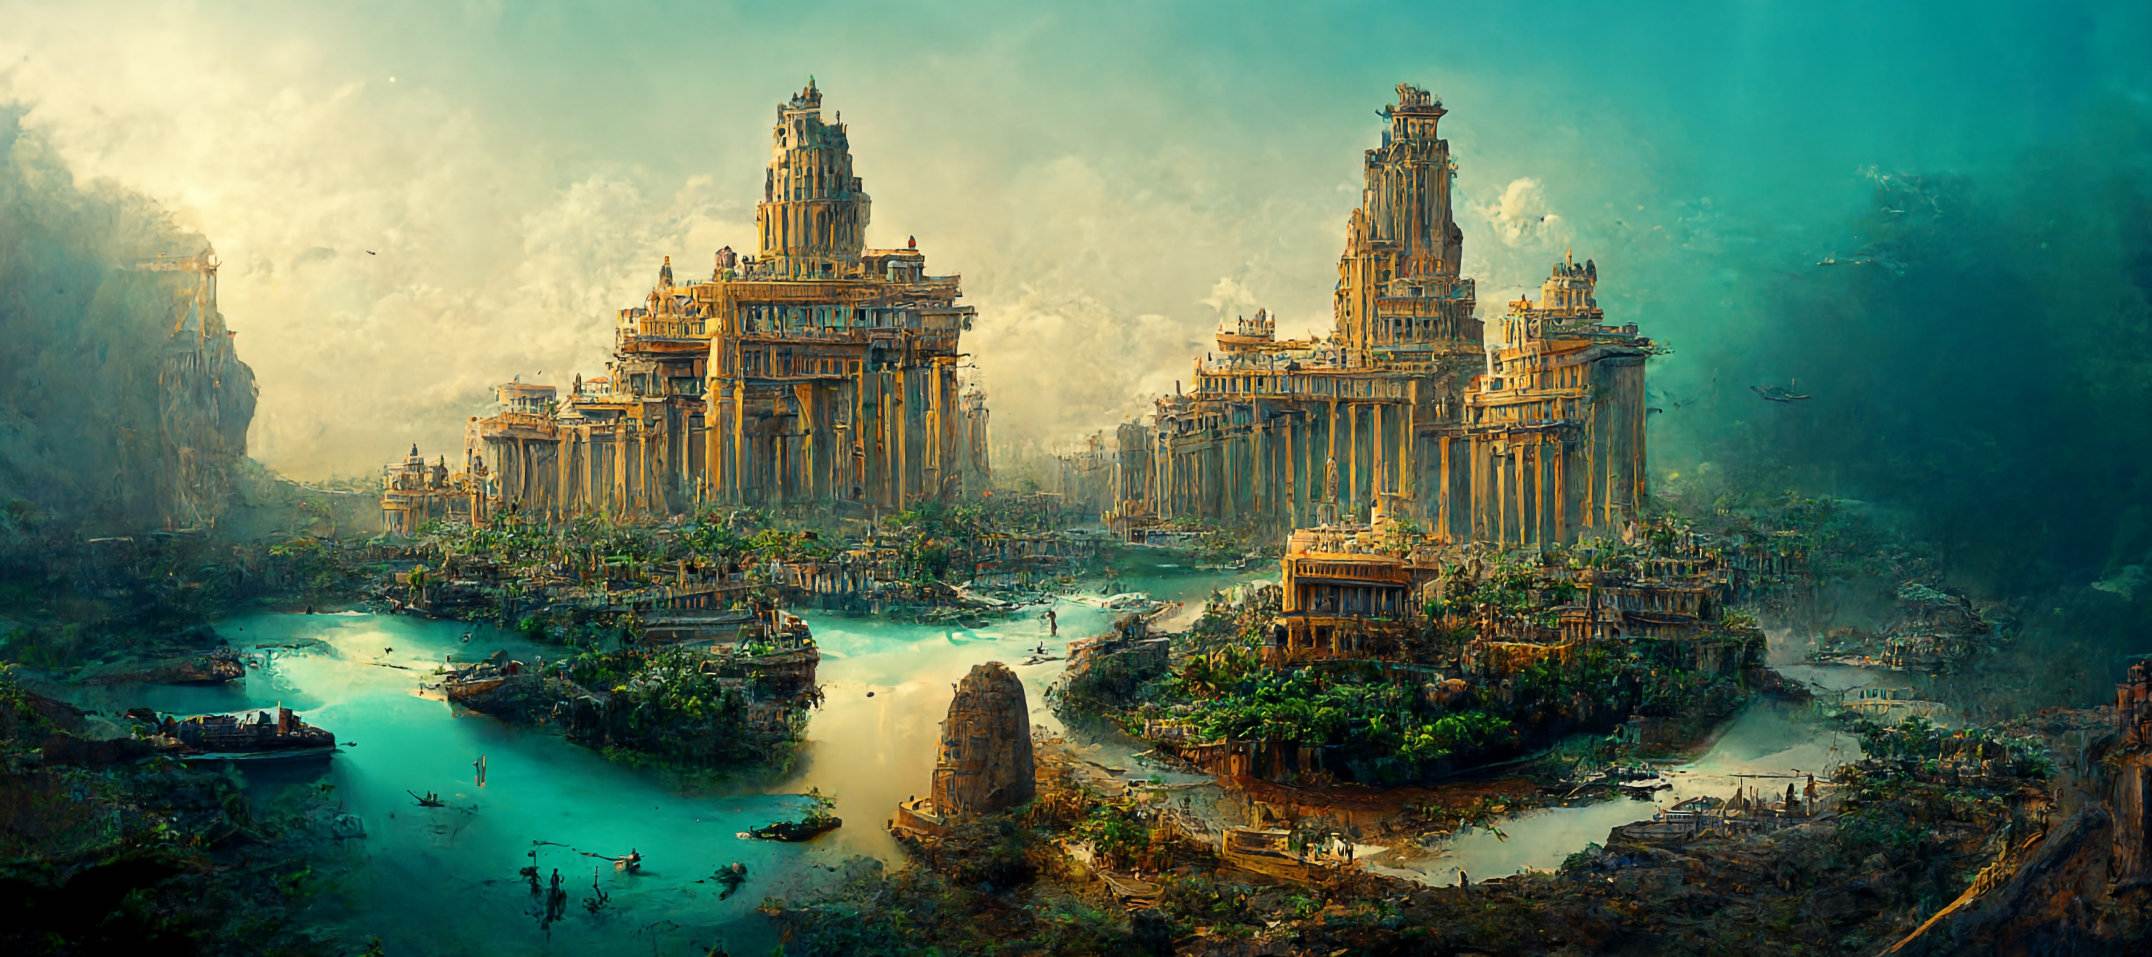 ເມືອງ Pavlopetri ຫຼື Atlantis ທີ່ຈົມຢູ່ໃຕ້ດິນ: ເມືອງເກົ່າ 5,000 ປີຖືກຄົ້ນພົບໃນປະເທດເກຣັກ 1